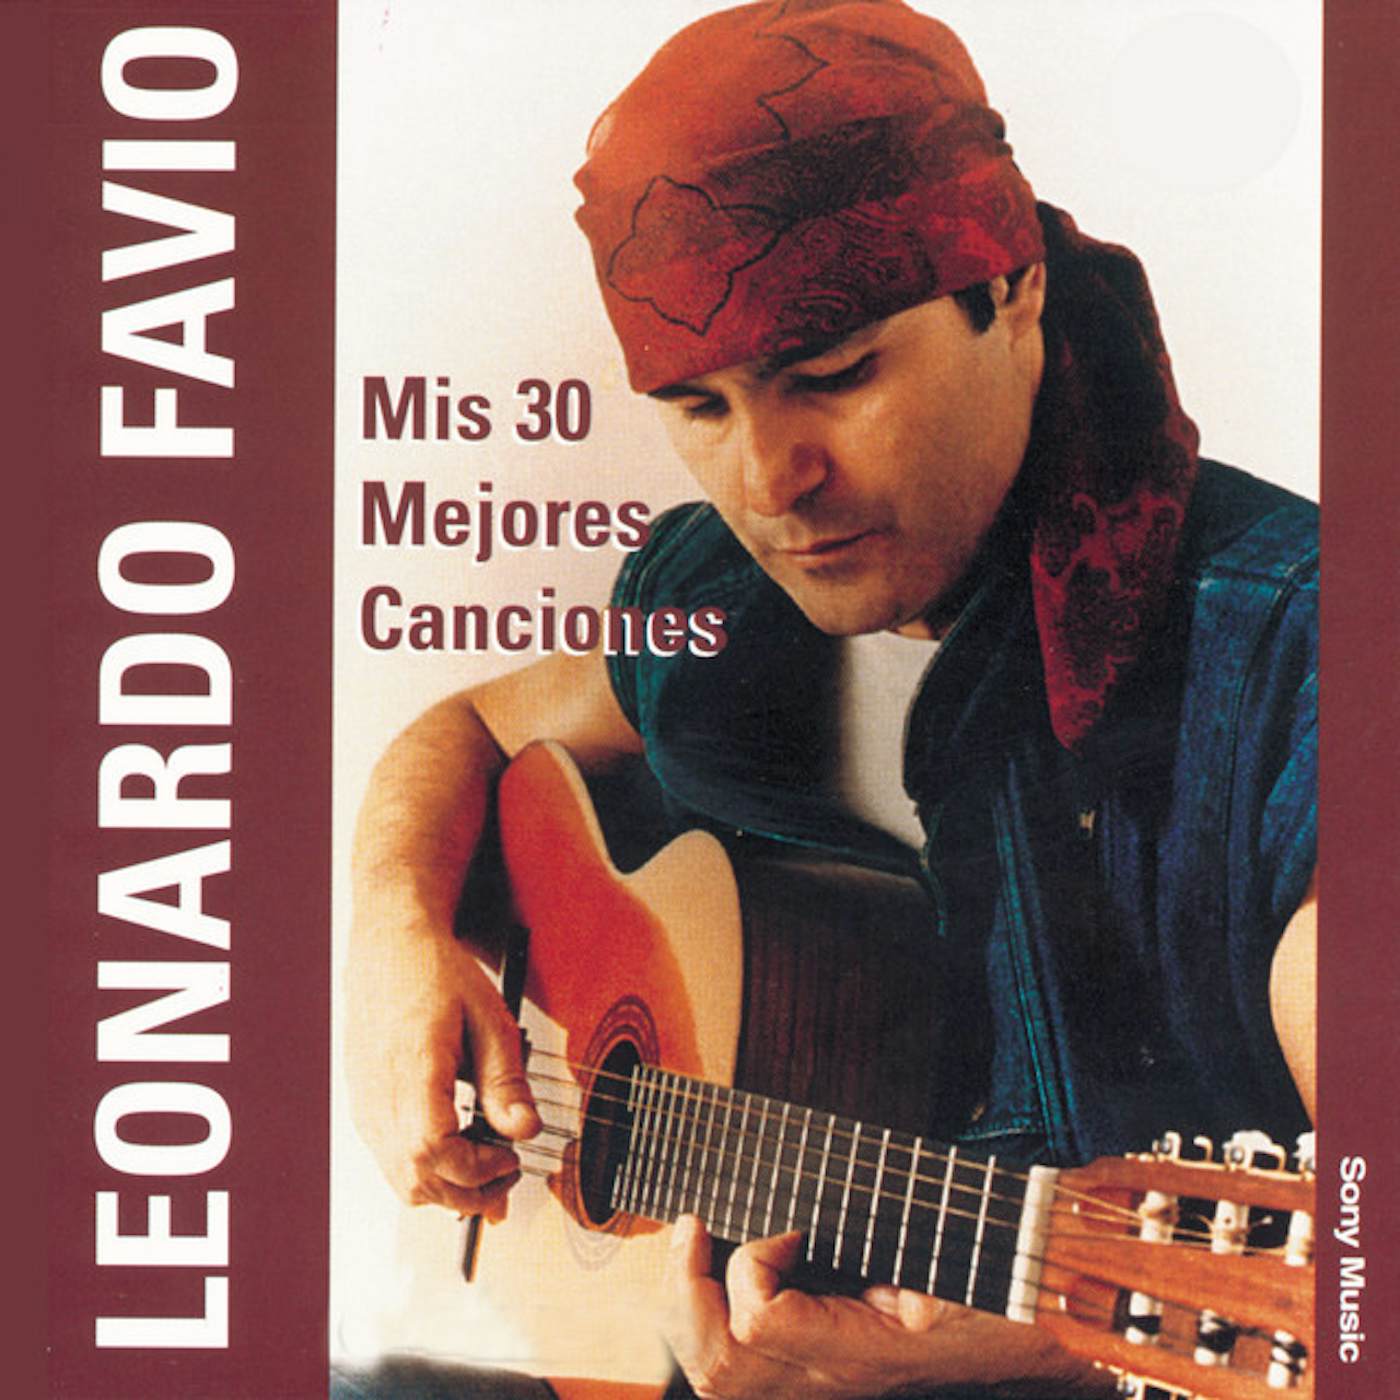 Leonardo Favio MIS 30 MEJORES CANCIONES CD